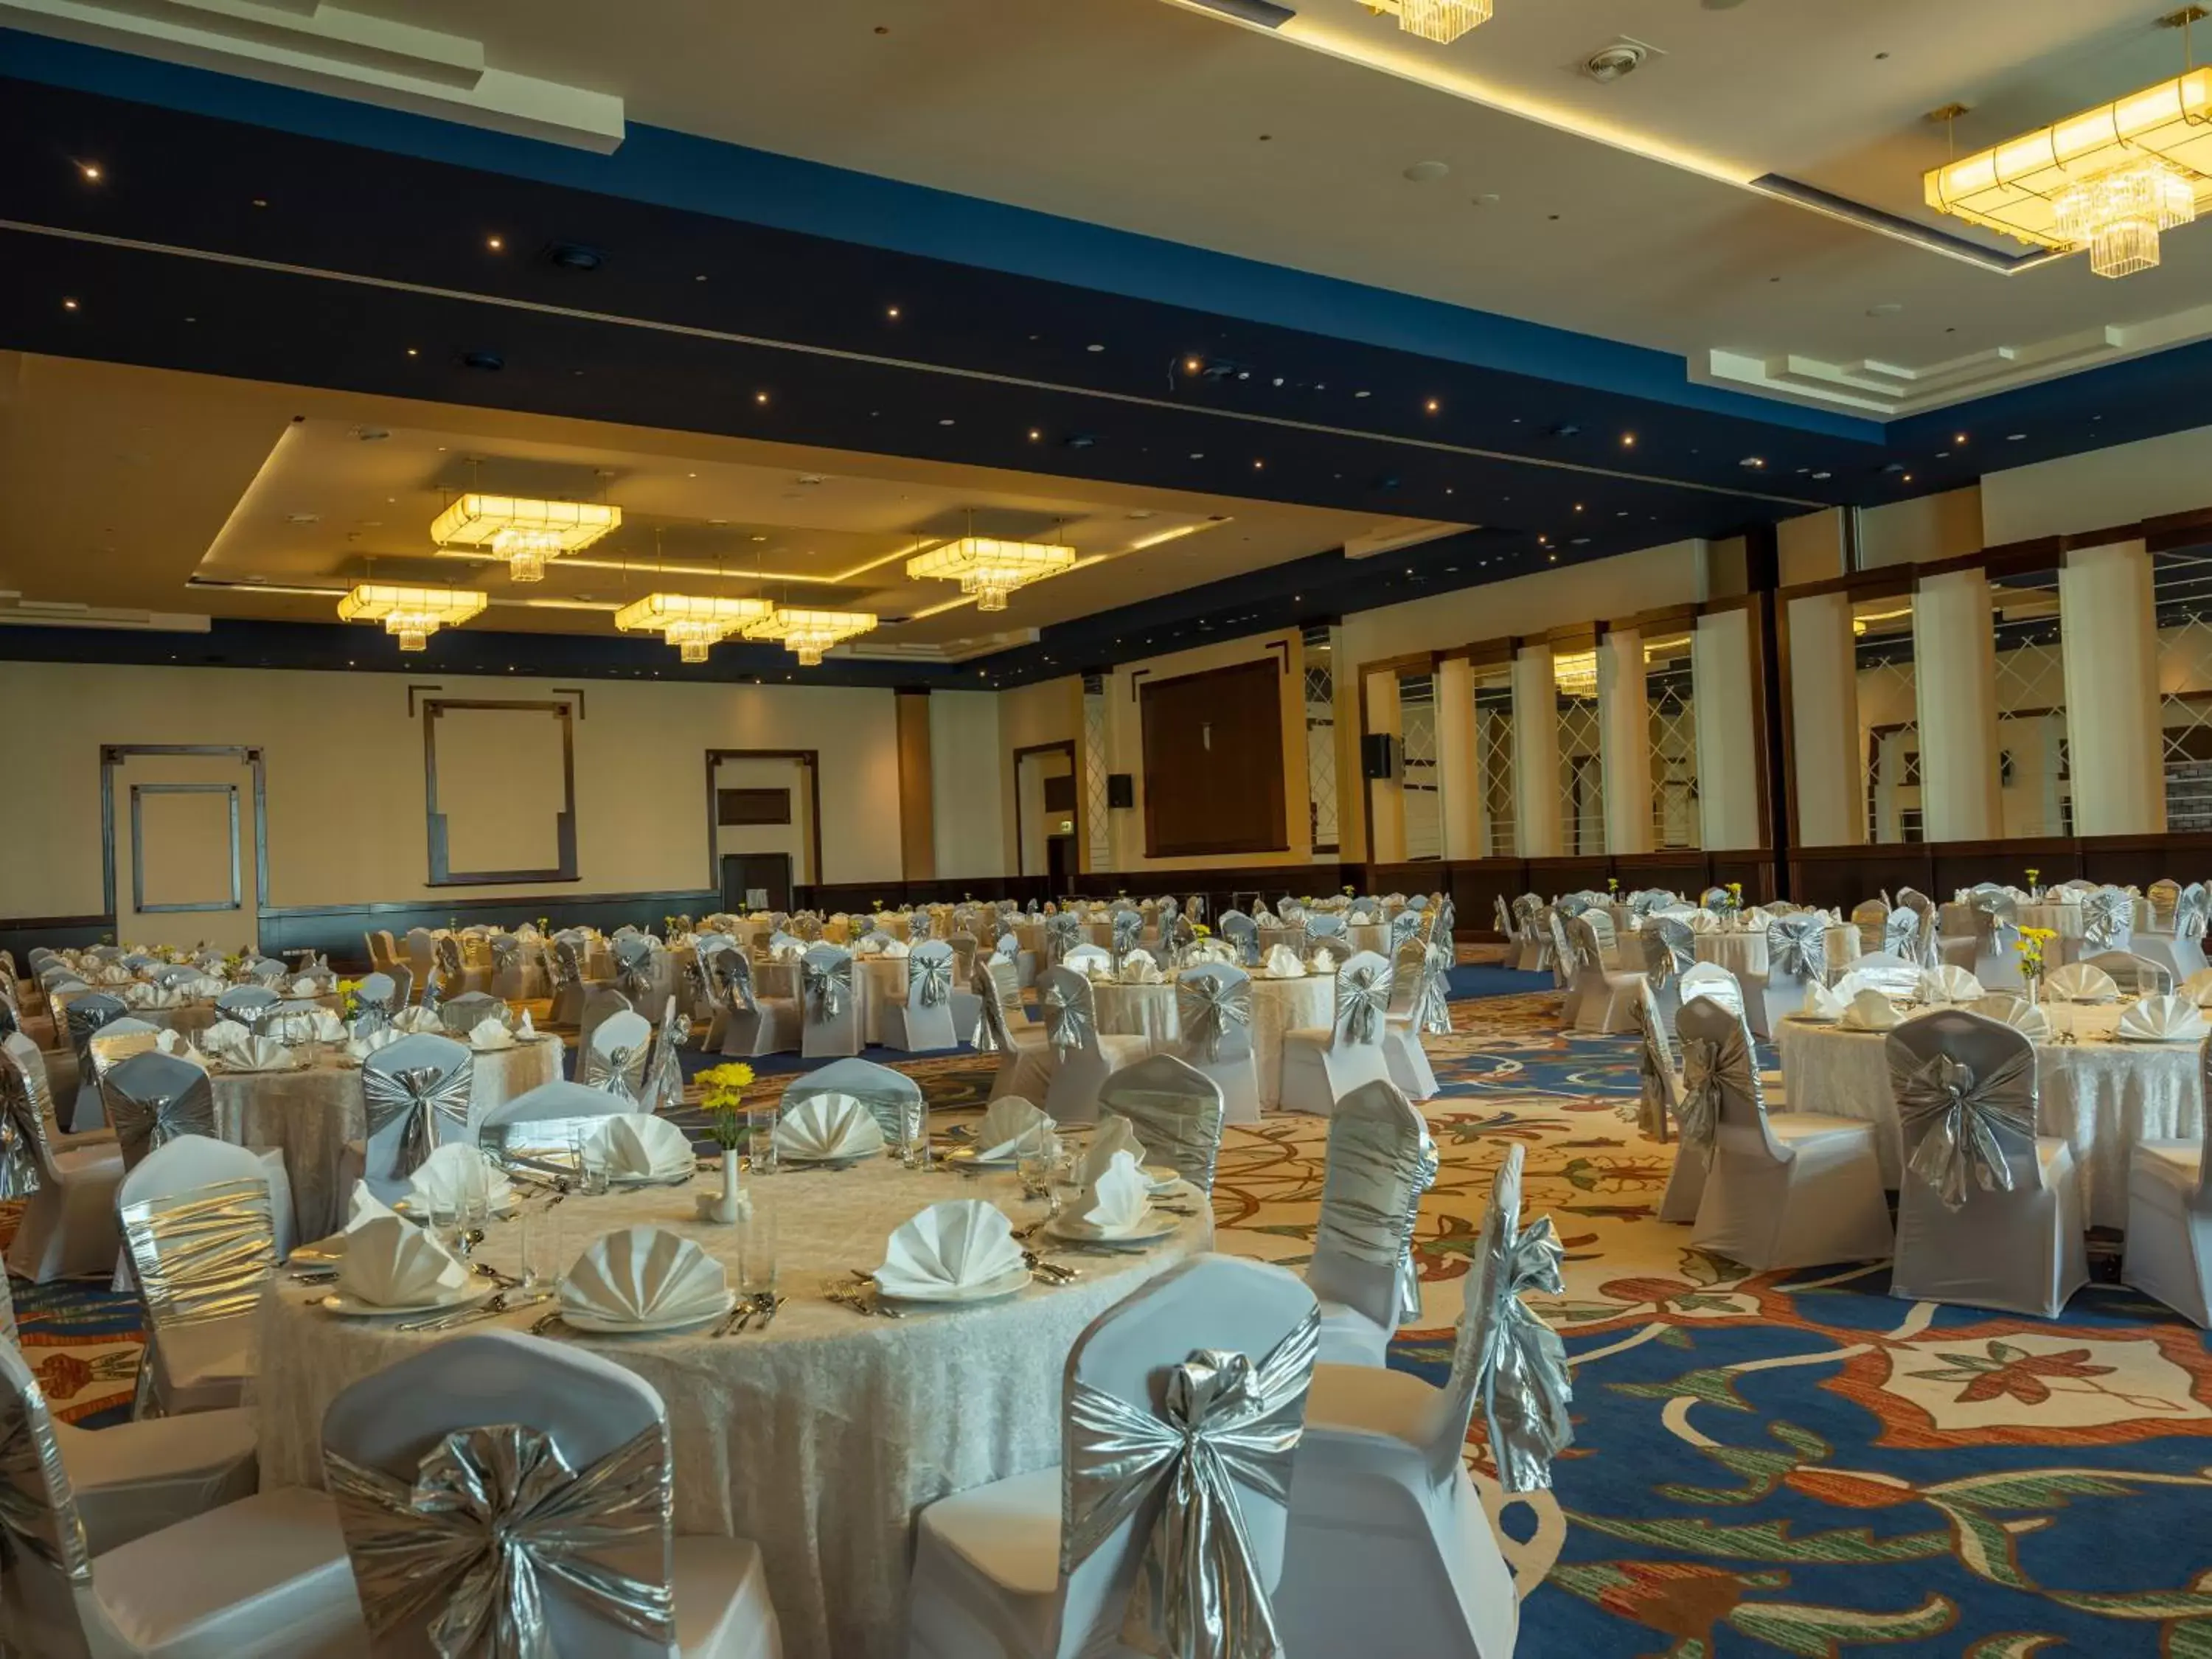 Banquet/Function facilities, Banquet Facilities in Retaj Salwa Resort & Spa